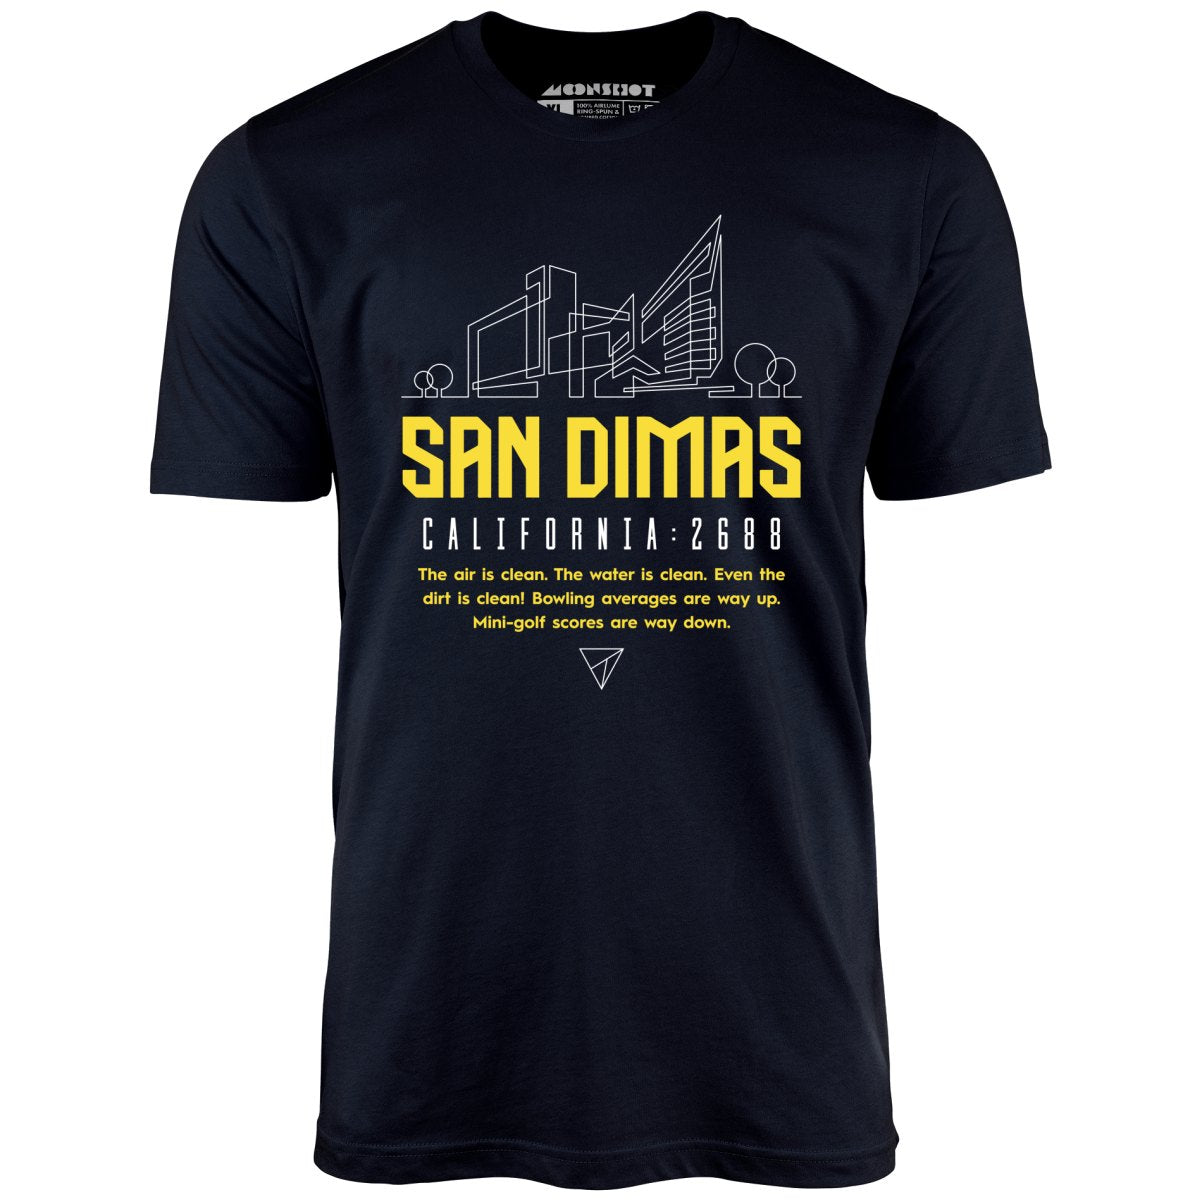 San Dimas 2688 - Bill & Ted's Excellent Adventure - Unisex T-Shirt